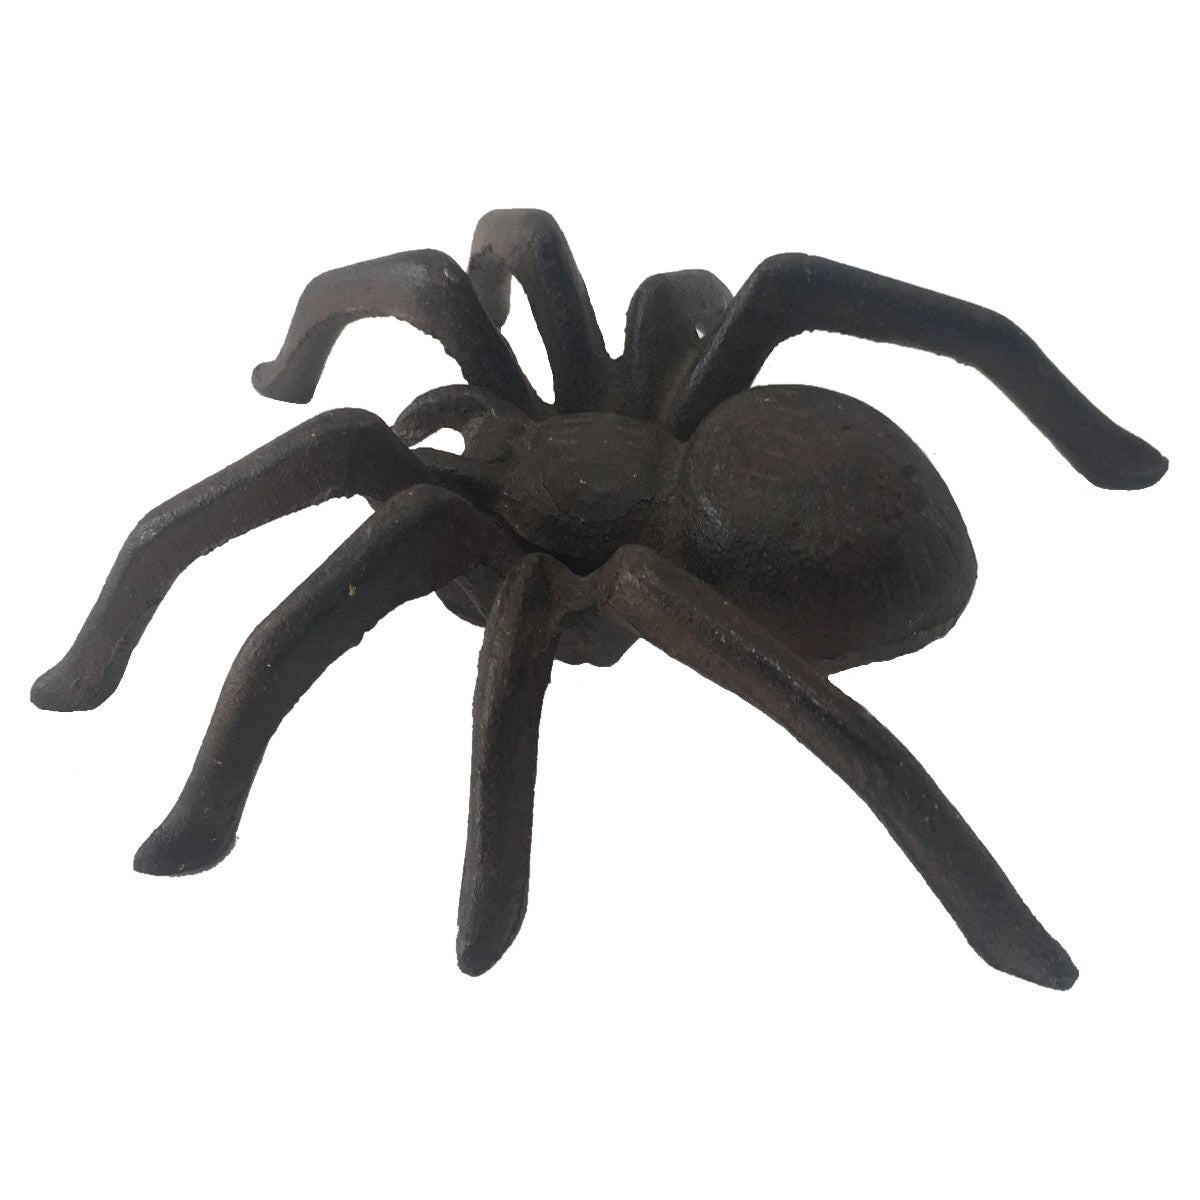 Cast Iron Spider Figurine